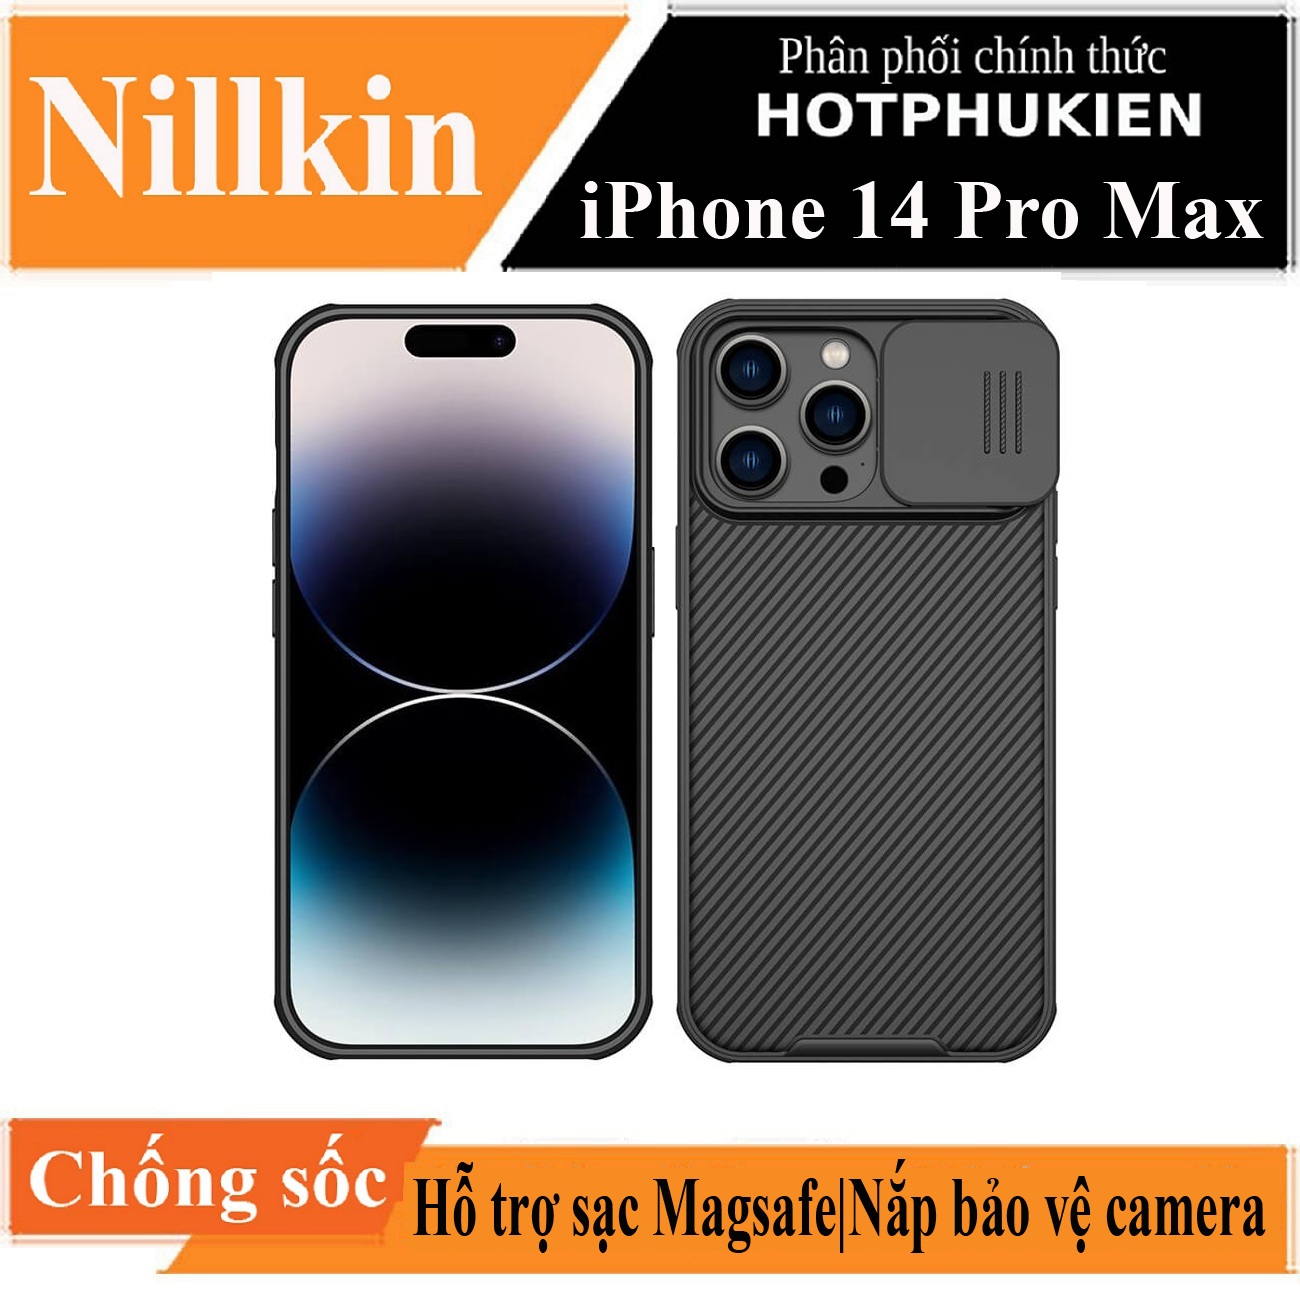 Ốp lưng maqsafe chống sốc cho iPhone 14 Pro Max (6.7 inch) bảo vệ Camera hiệu Nillkin Camshield Pro chống sốc cực tốt, chất liệu cao cấp, có khung & nắp đậy bảo vệ Camera - hàng nhập khẩu